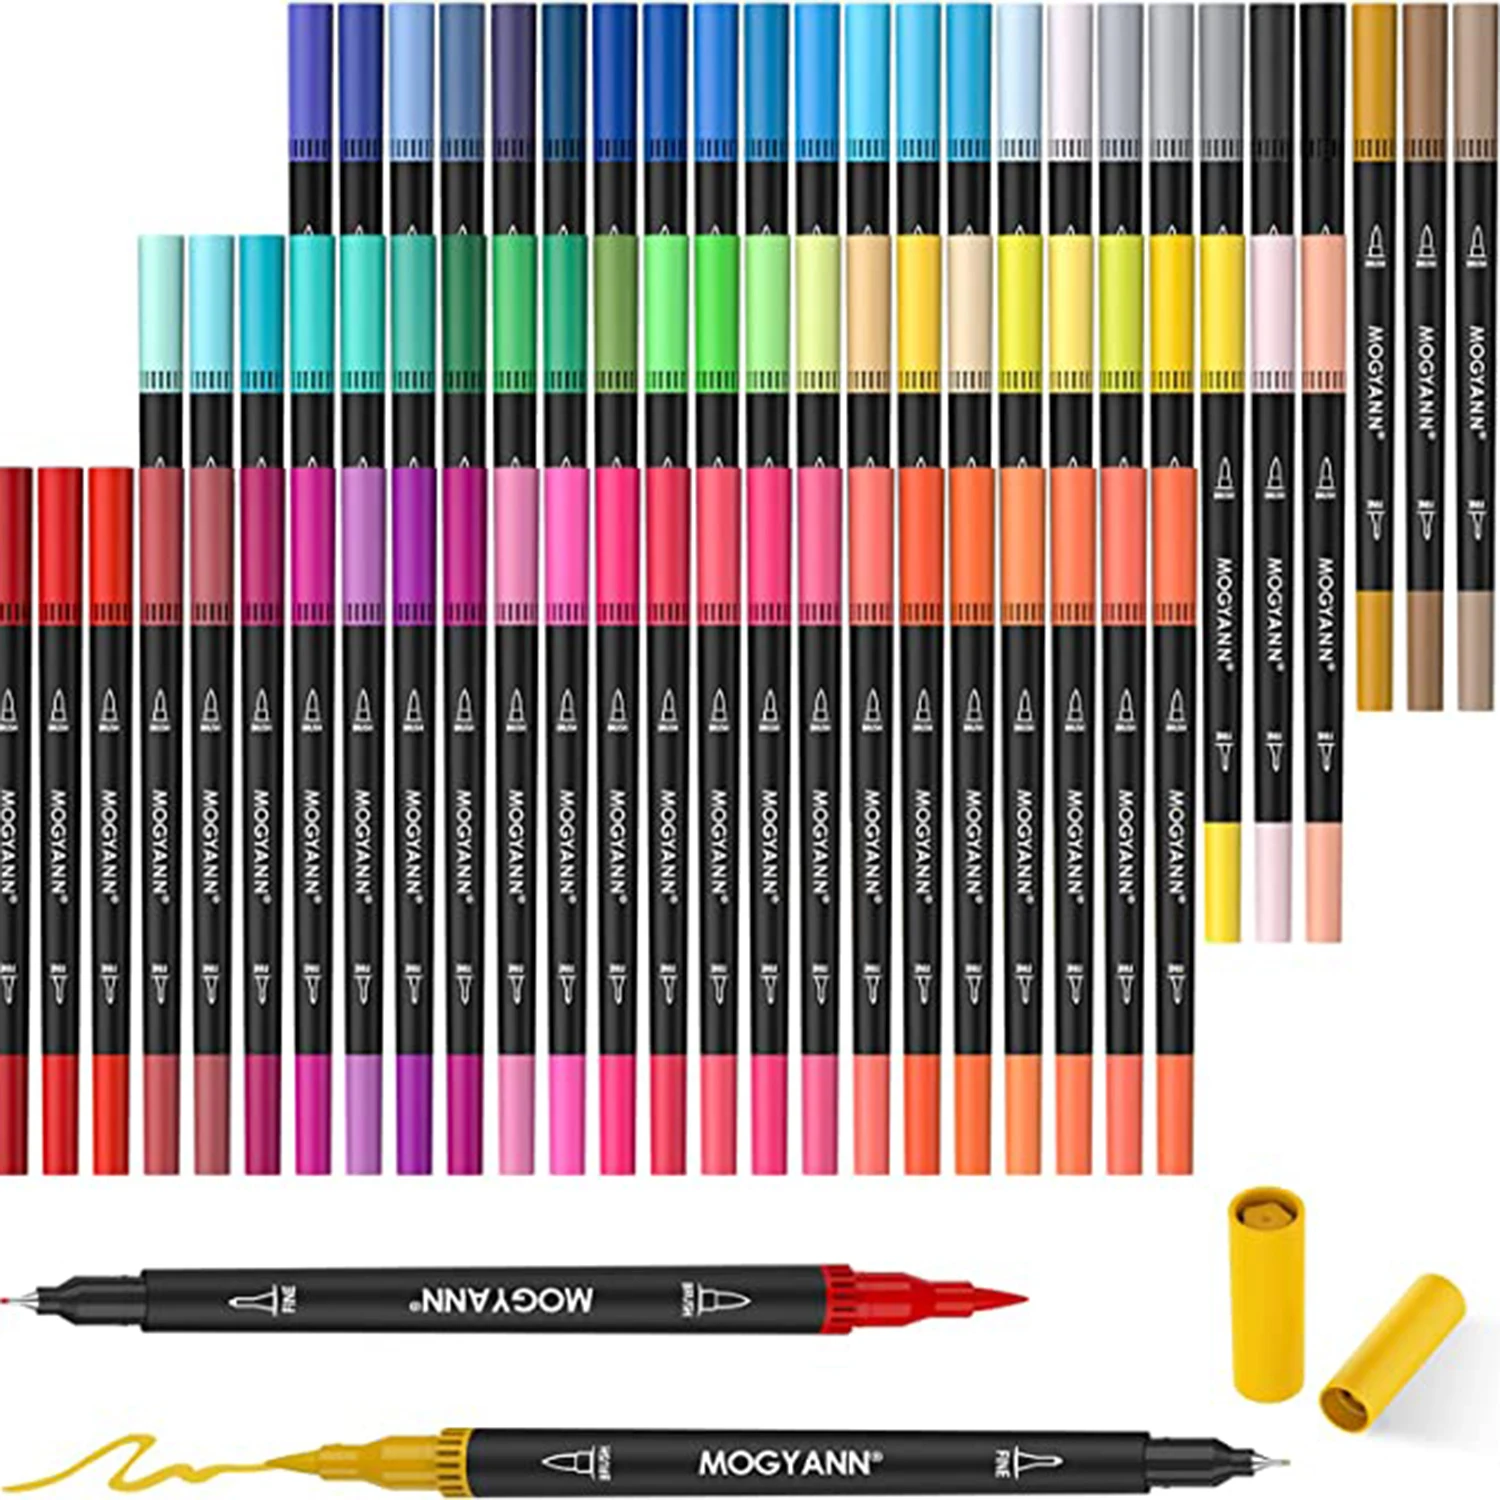 https://ae01.alicdn.com/kf/S8f5df73d20d741c4b5d364b79895f6beW/Pack-of-72-Dual-Tip-Brush-Art-Marker-Pens-Coloring-Markers-Fine-Brush-Tip-Pen-for.jpg